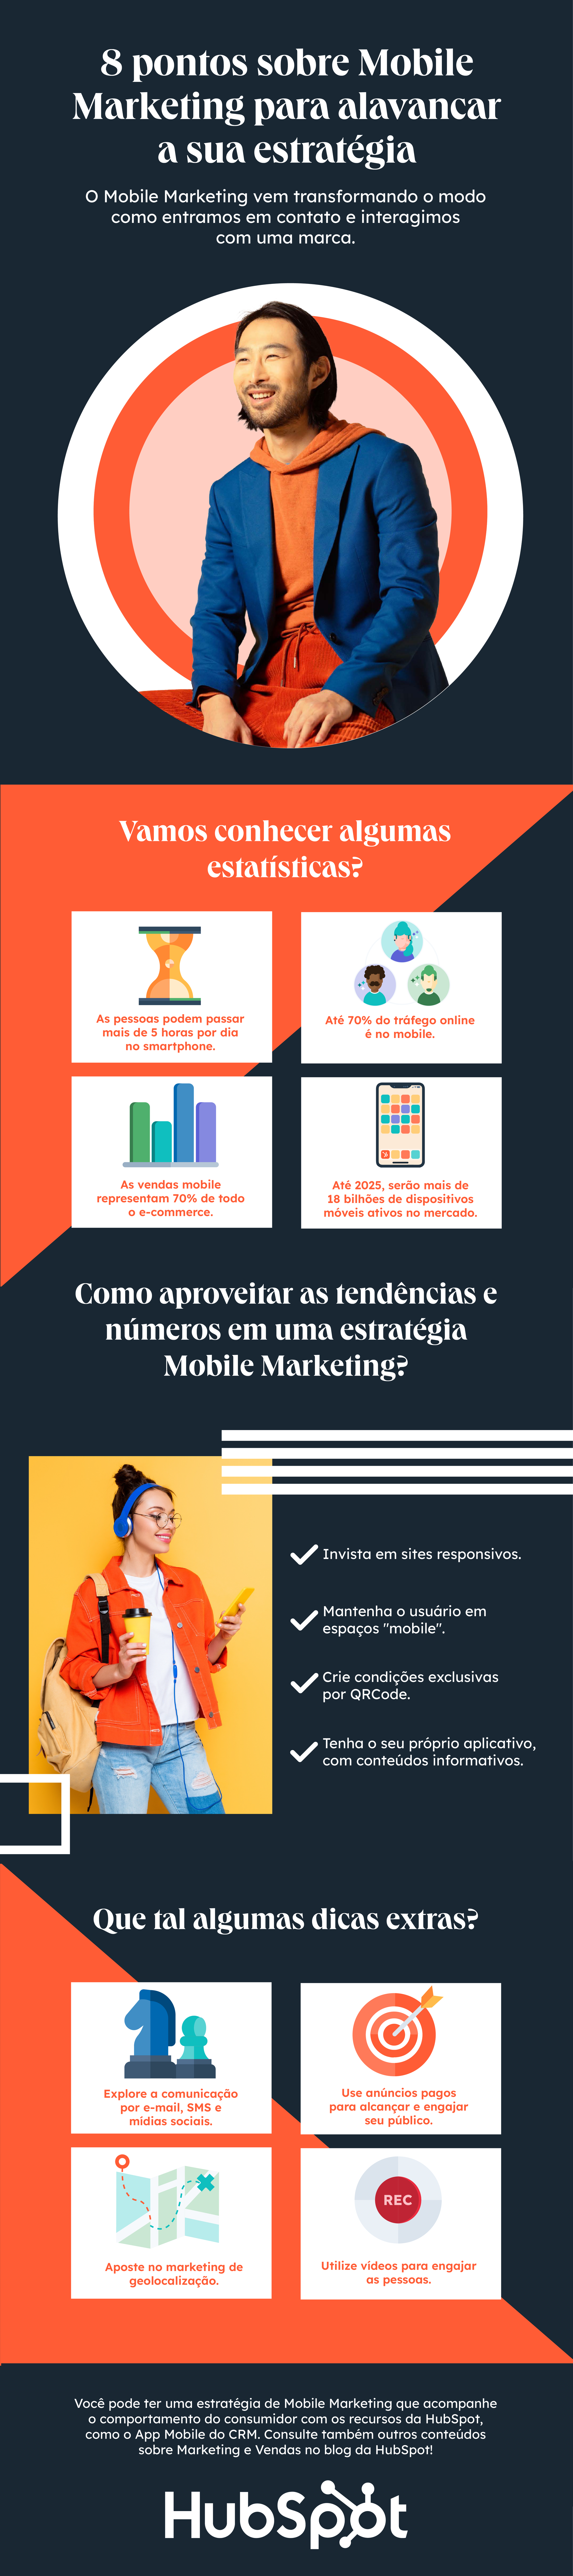 HUBSPOT - 8 pontos sobre Mobile Marketing